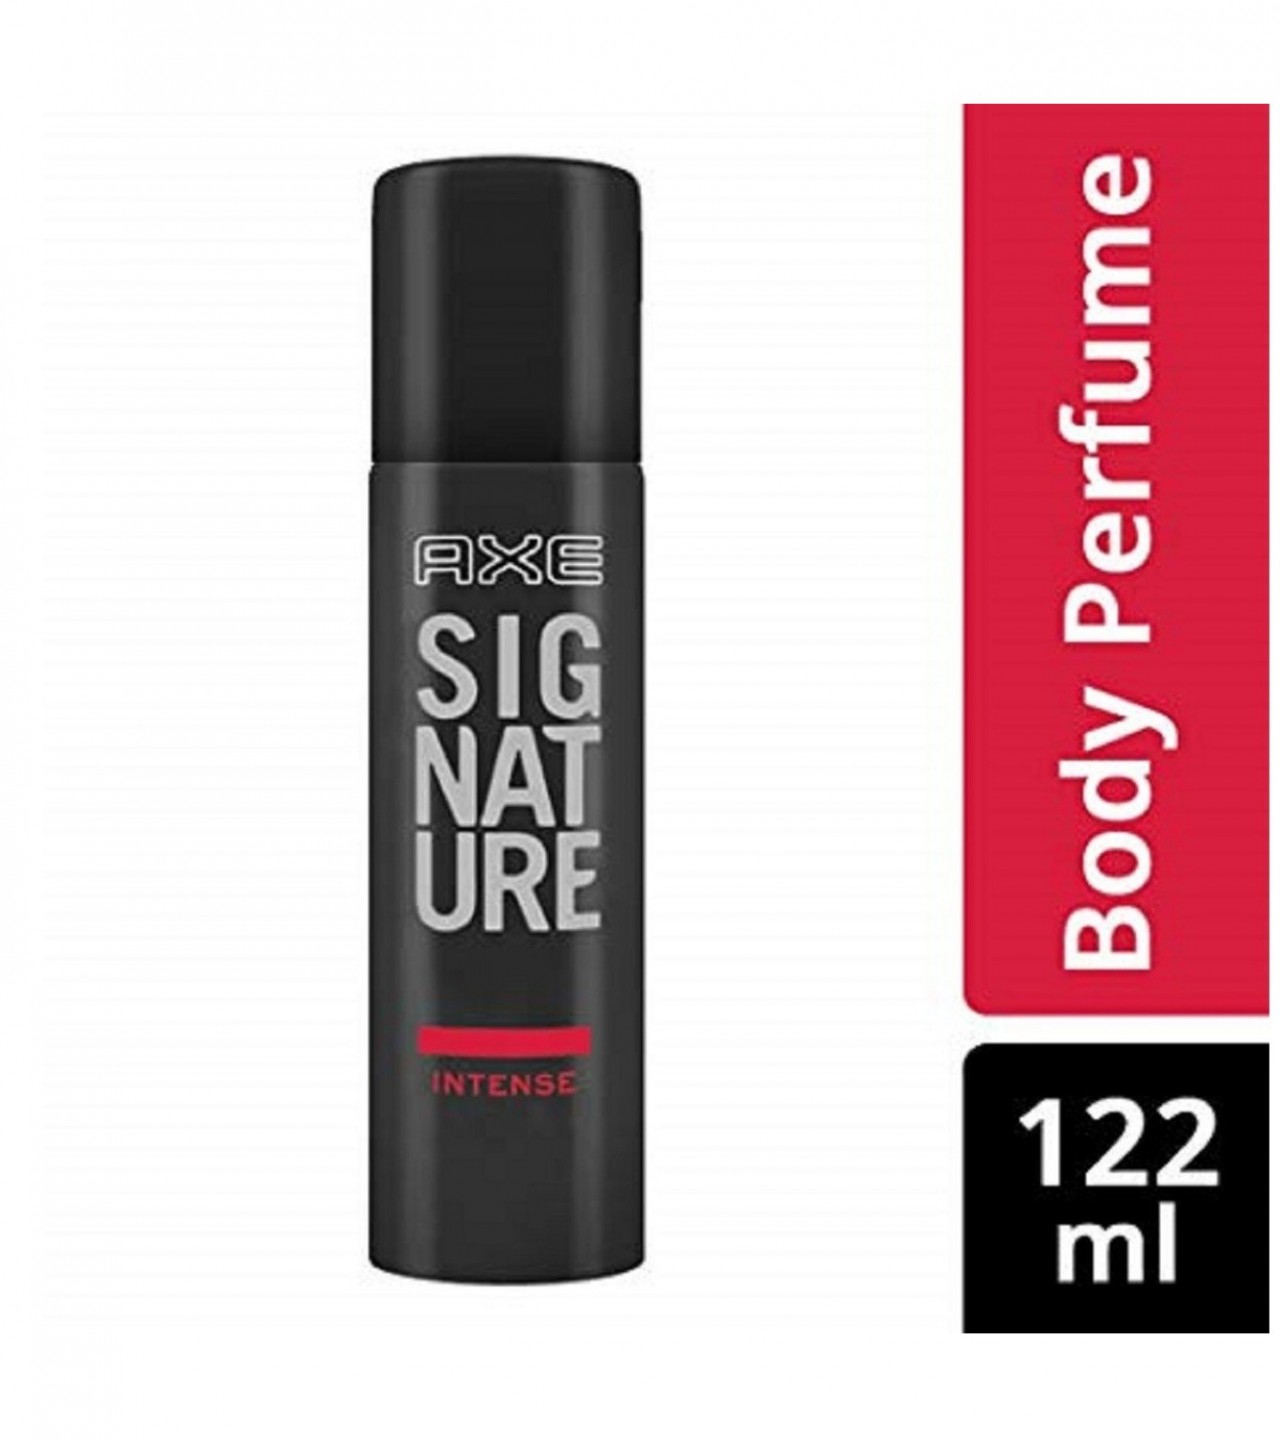 Axe Signature Intense Perfume Body Spray For Men - 122 ml